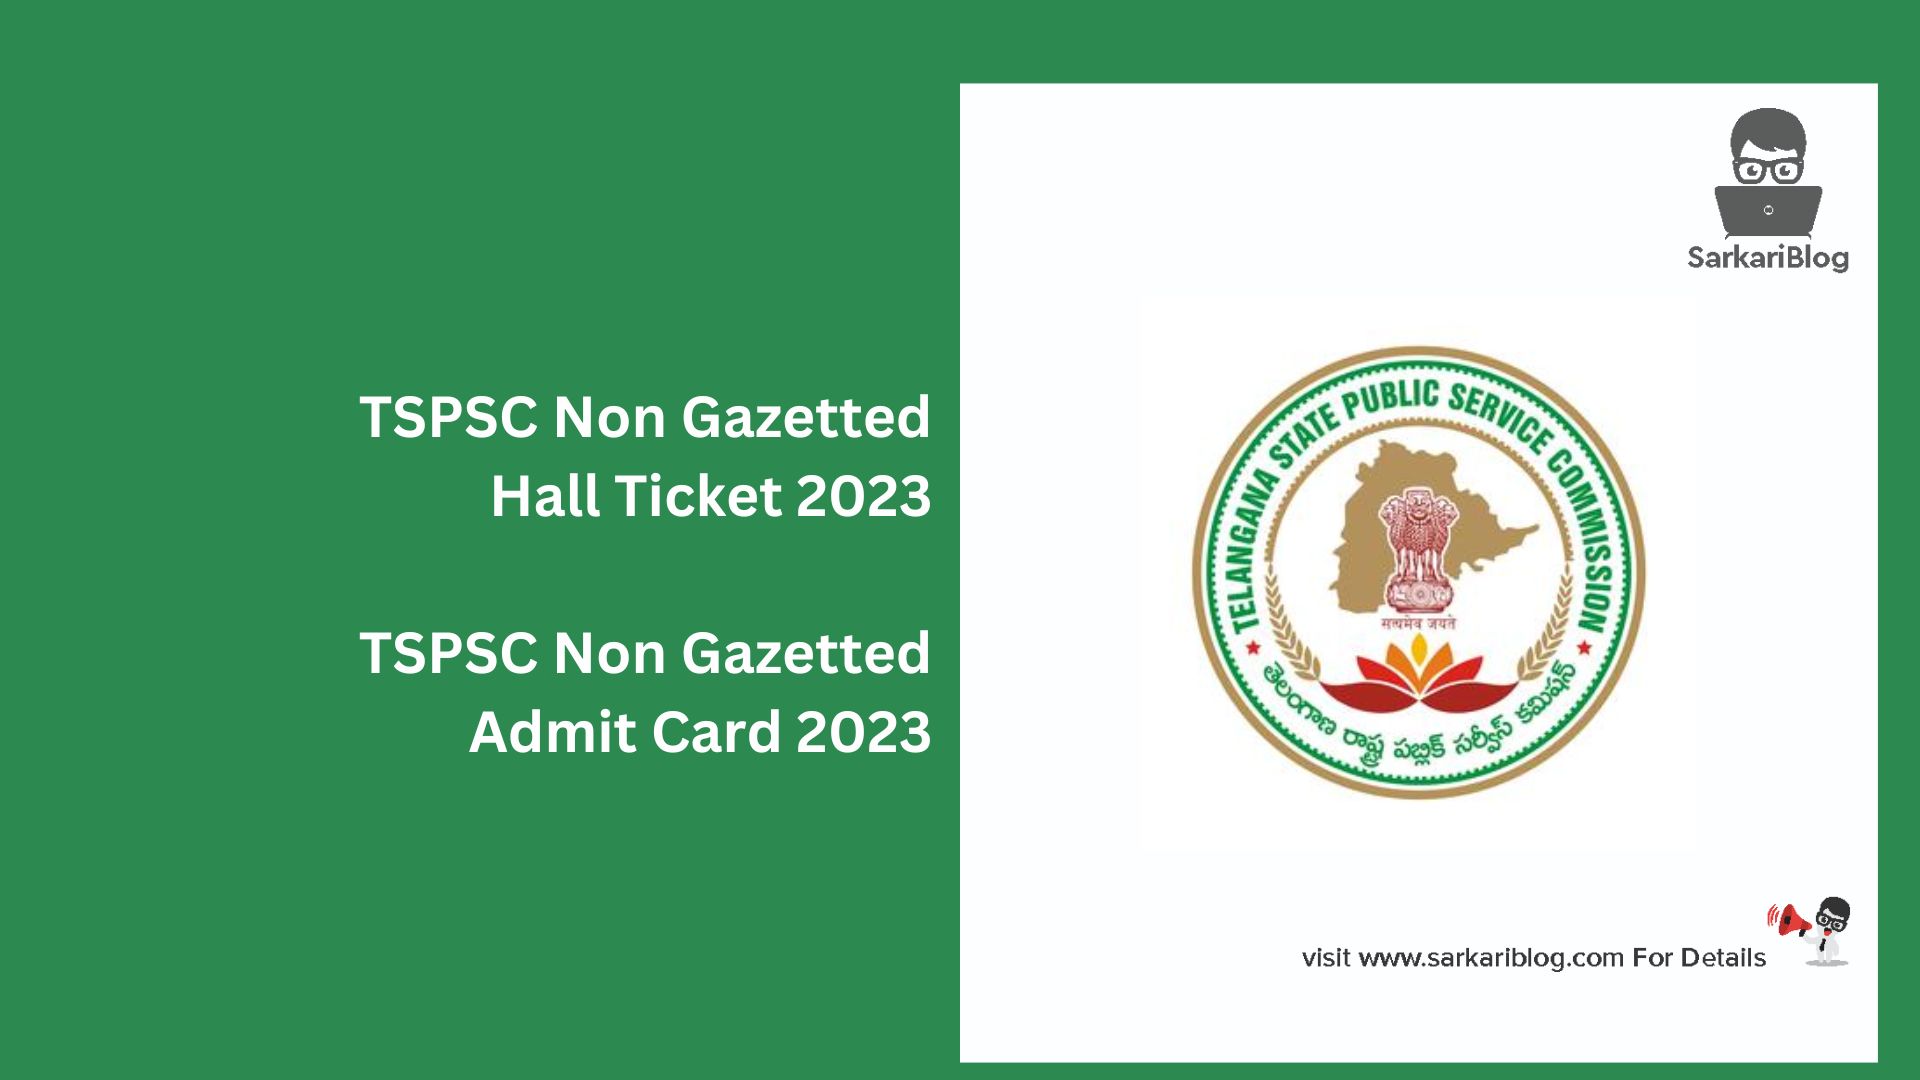 TSPSC Non Gazetted Hall Ticket 2023